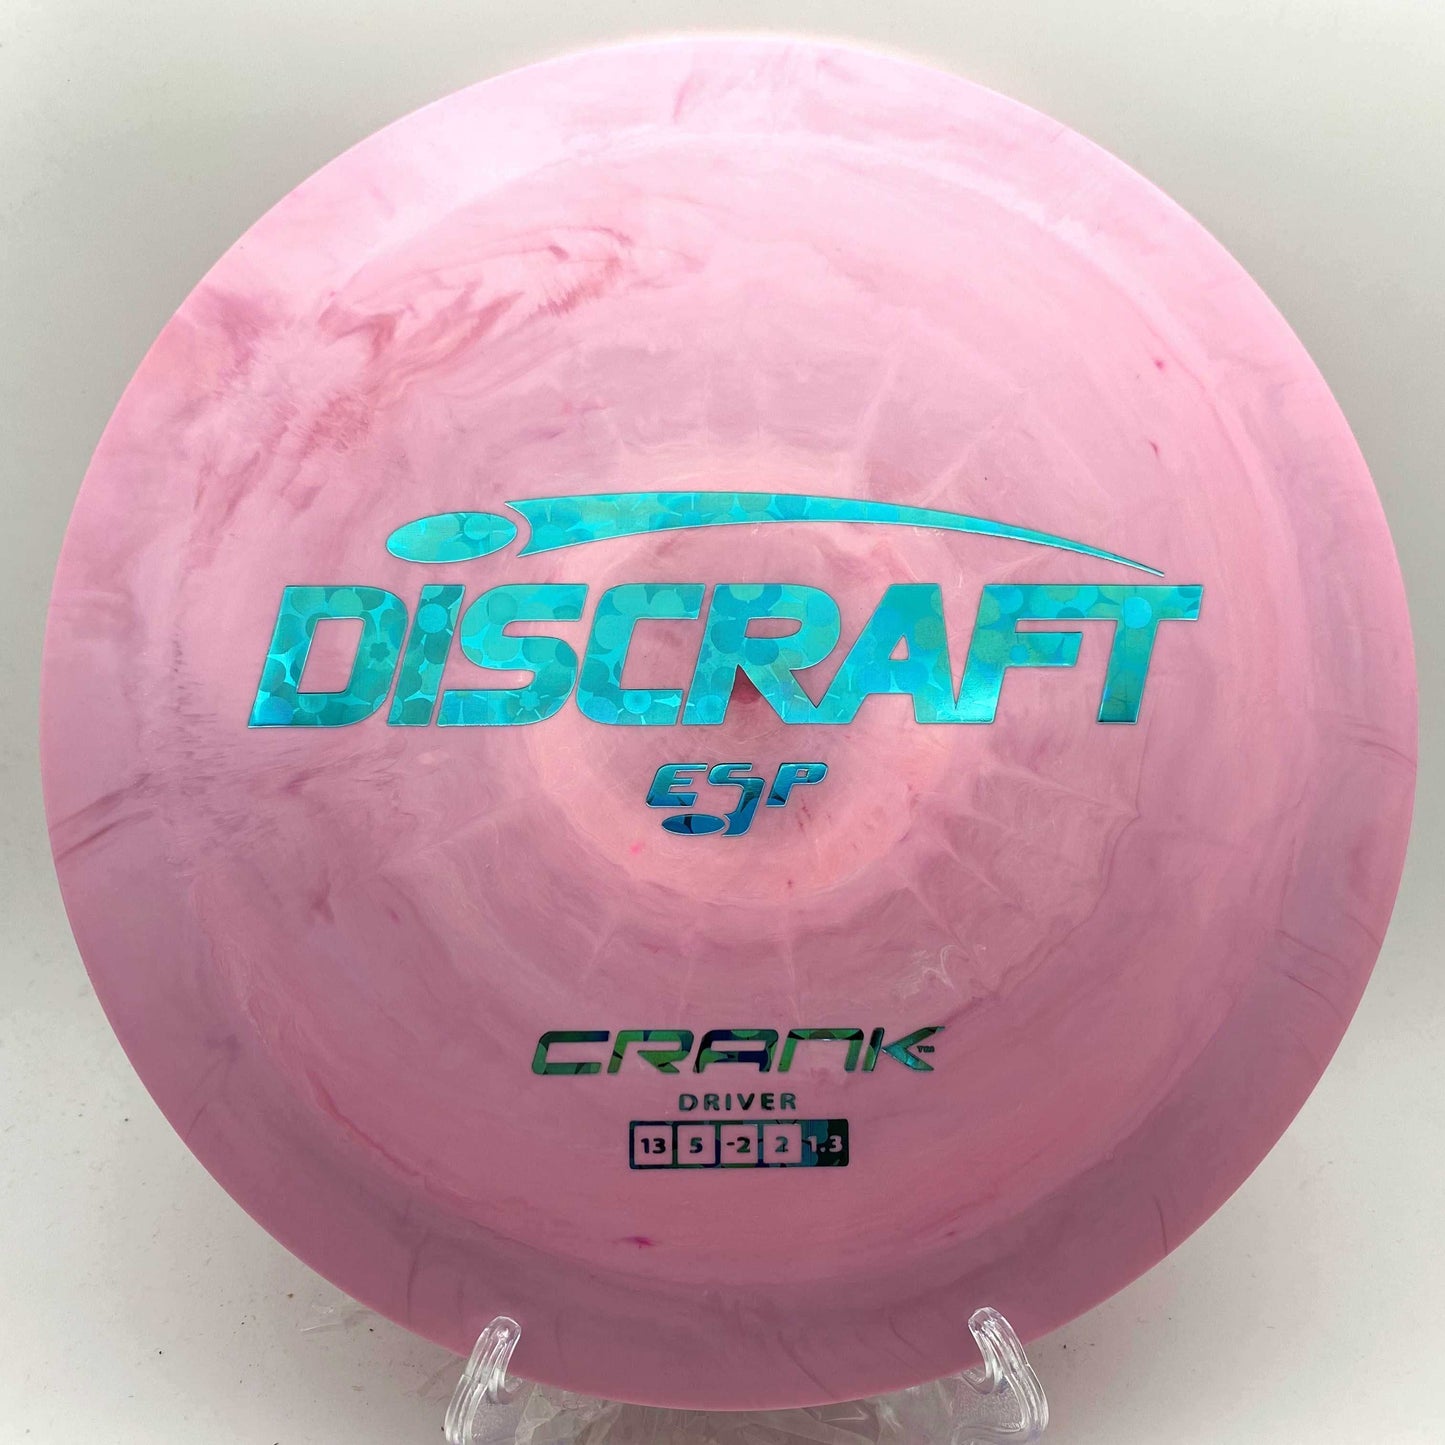 Discraft ESP Crank - Disc Golf Deals USA